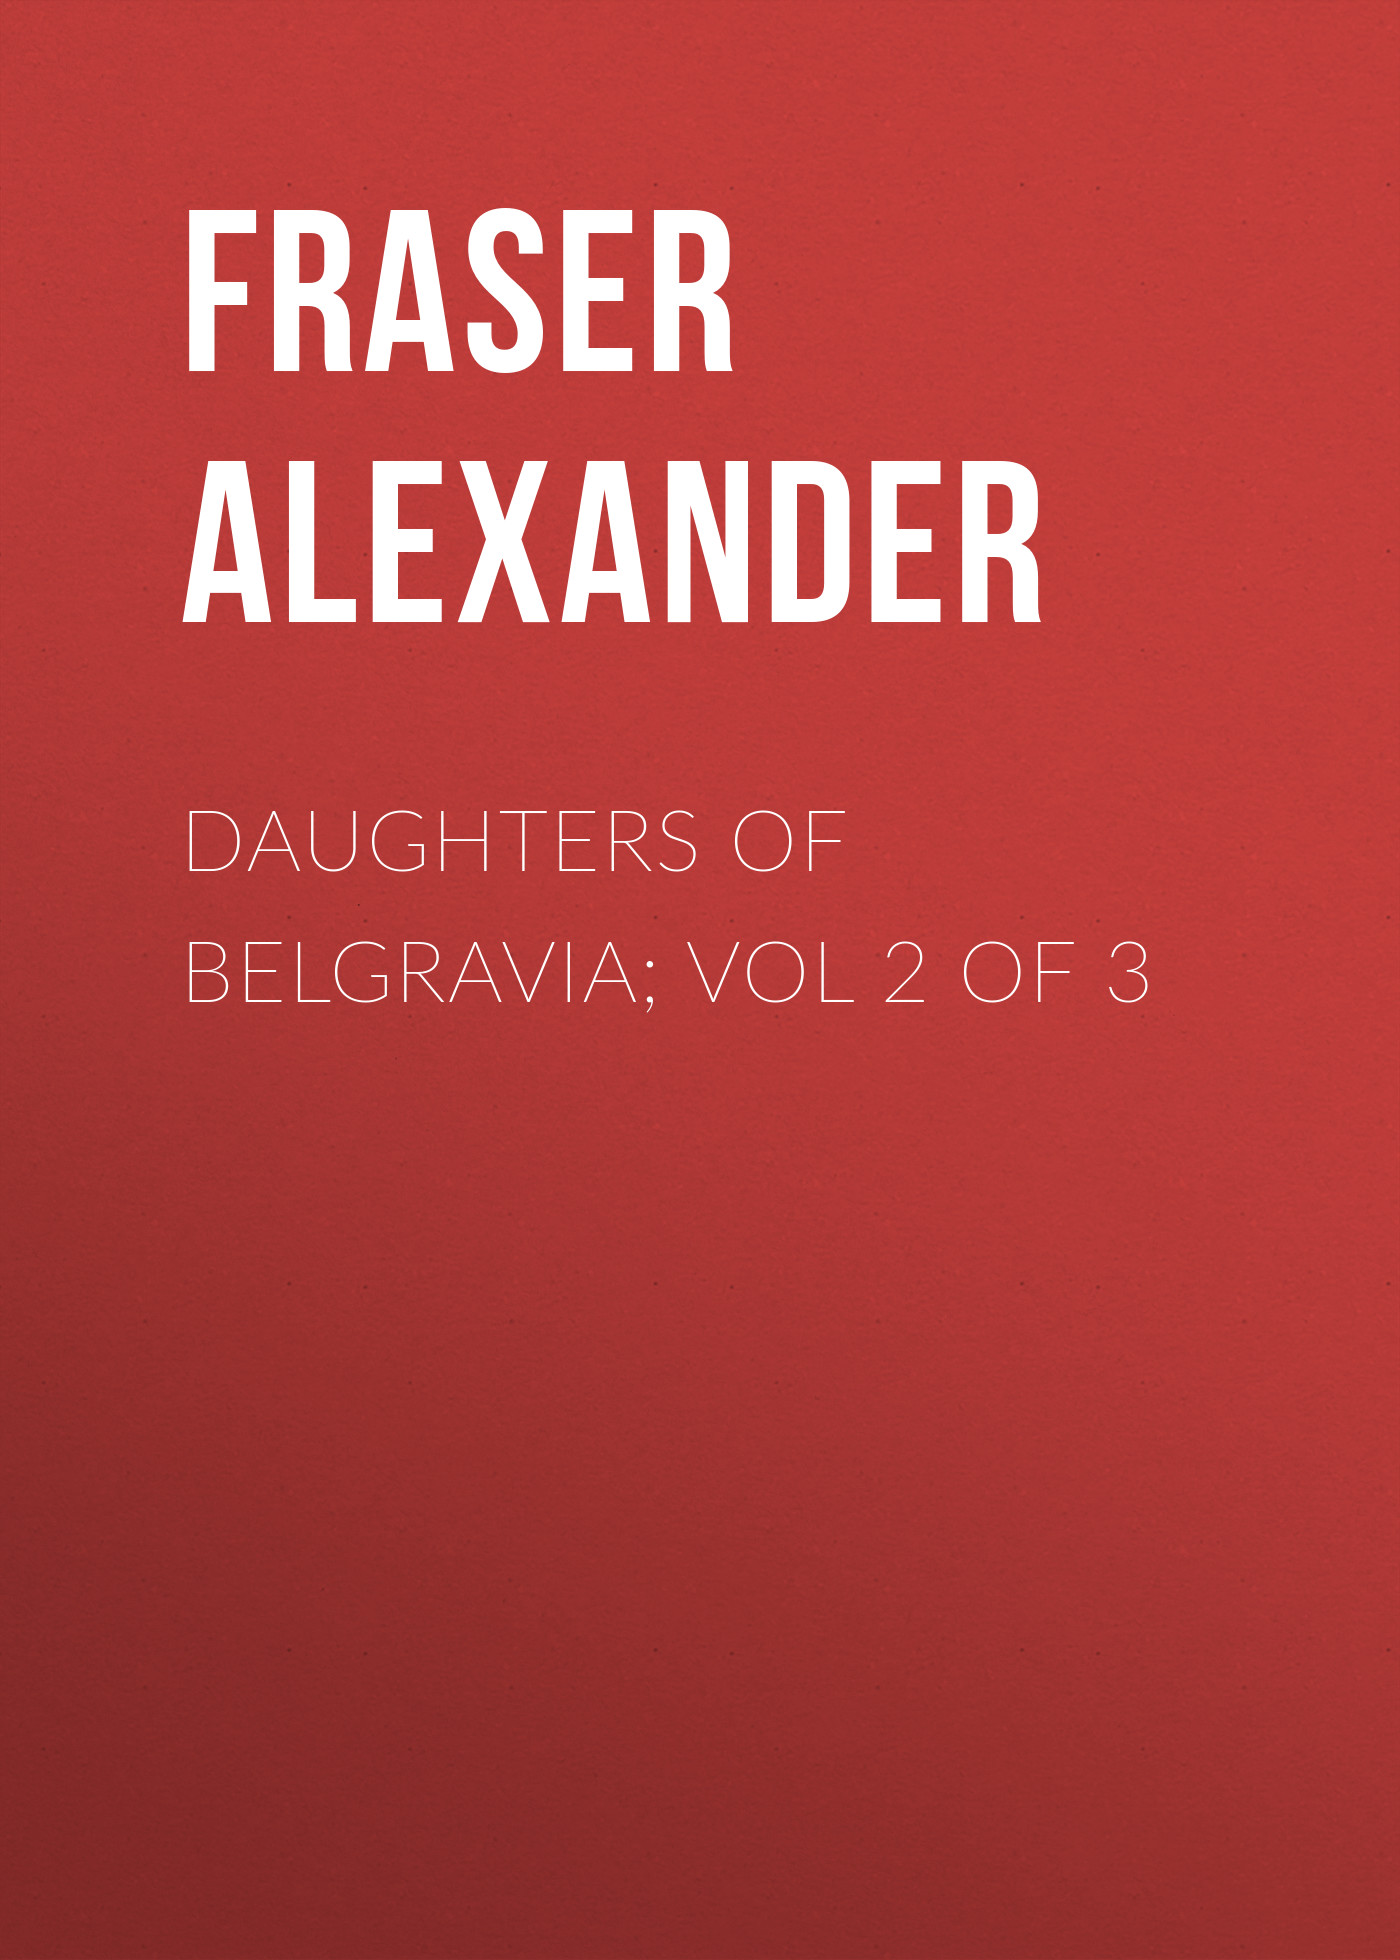 Книга Daughters of Belgravia; vol 2 of 3 из серии , созданная Alexander Fraser, может относится к жанру Зарубежная старинная литература, Зарубежная классика. Стоимость электронной книги Daughters of Belgravia; vol 2 of 3 с идентификатором 24858827 составляет 0 руб.